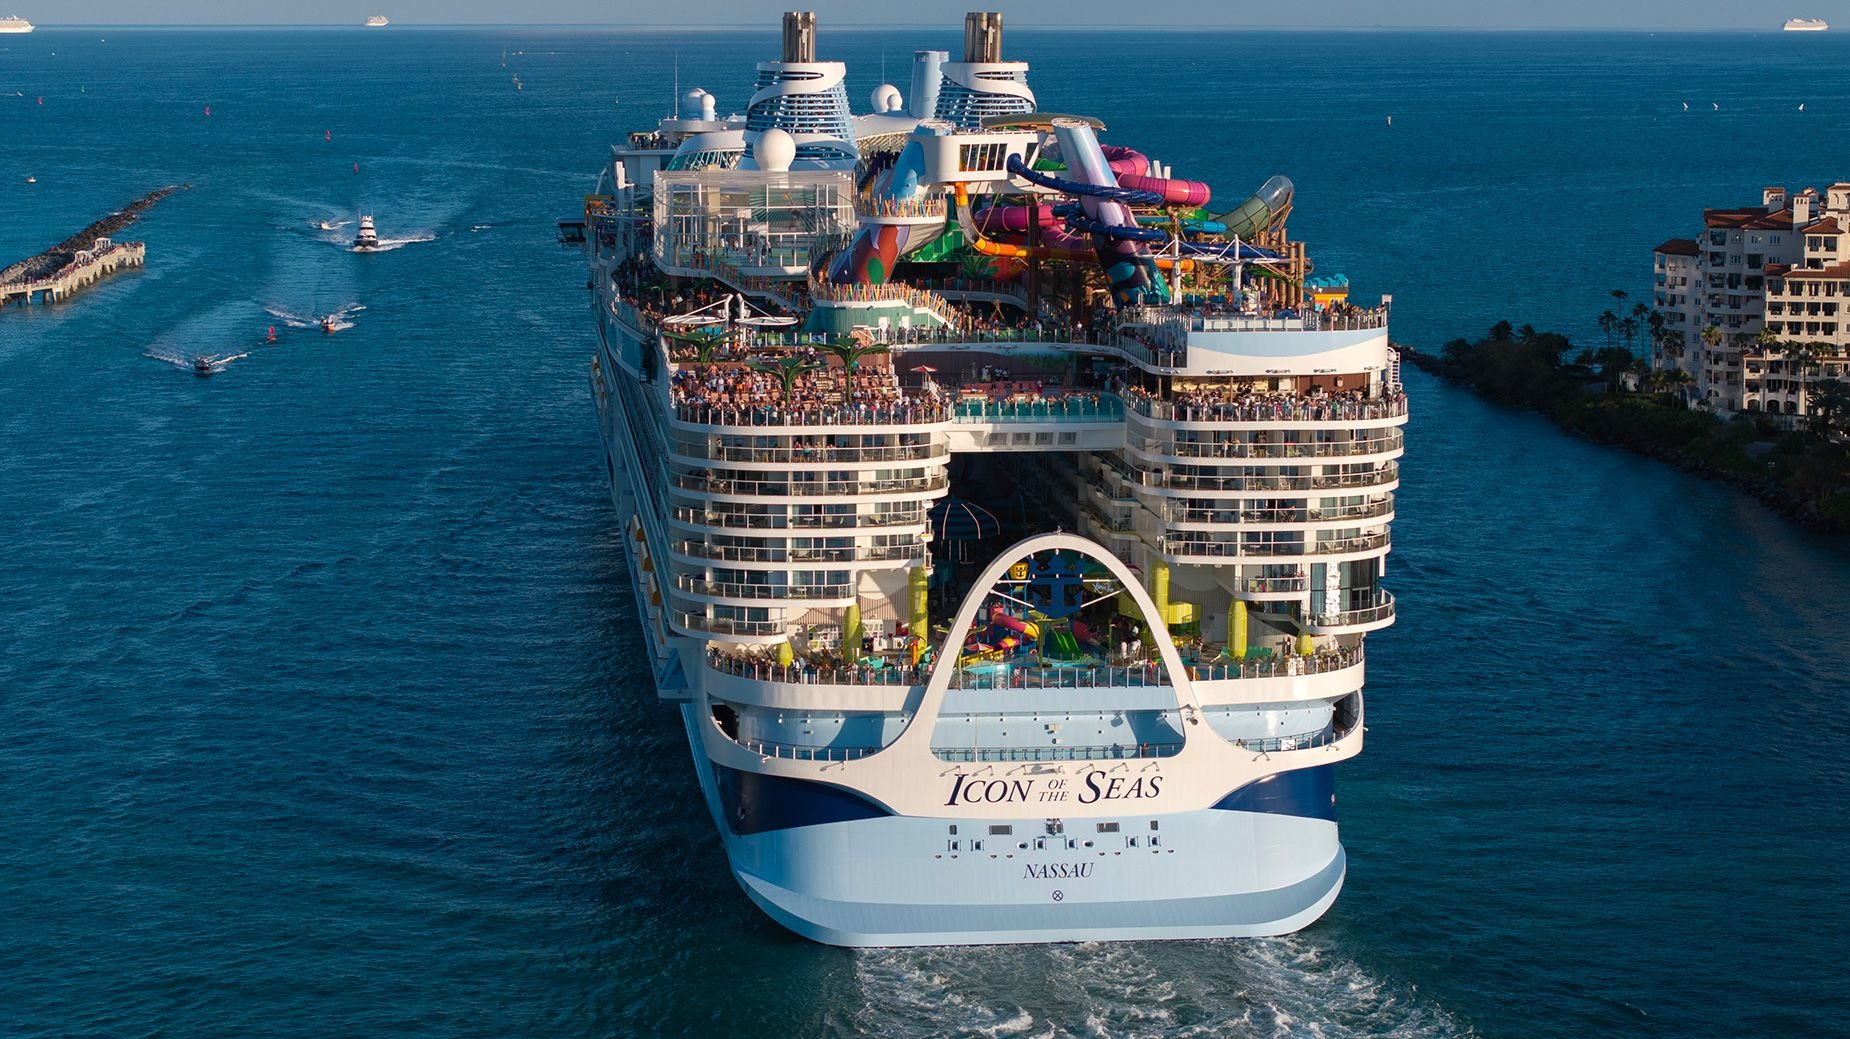 Icon of the Seas, du thuyền lớn nhất thế giới do Royal Caribbeans sở hữu, đã gặp hỏa hoạn khi đang cập cảng ở Costa Maya, Mexico. (Ảnh: CNN)